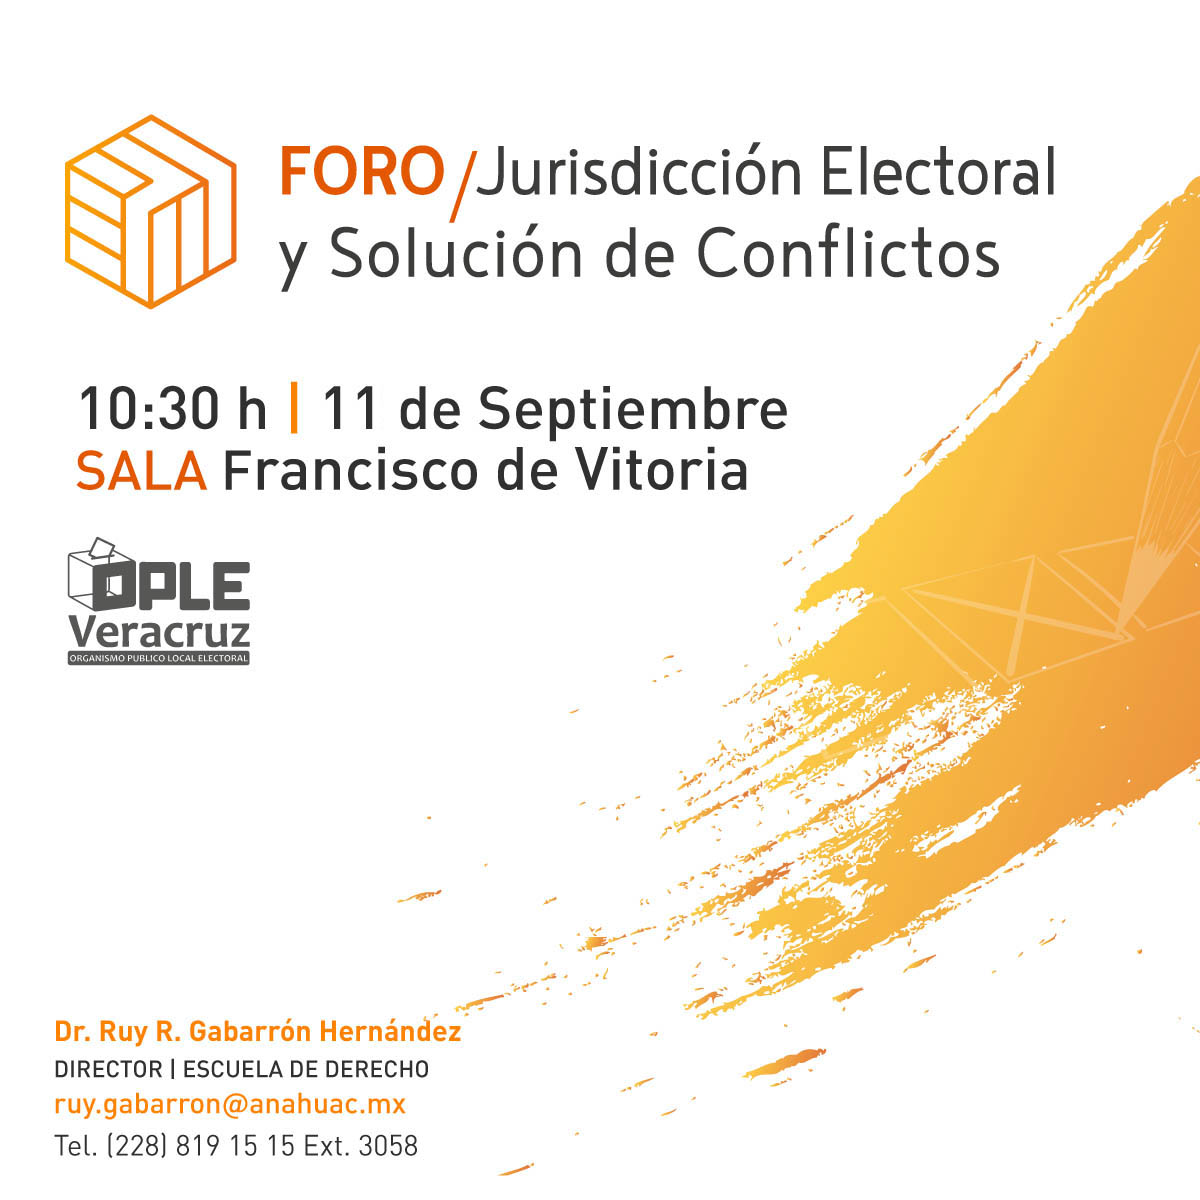 Foro Jurisdicción Electoral y Solución de Conflictos